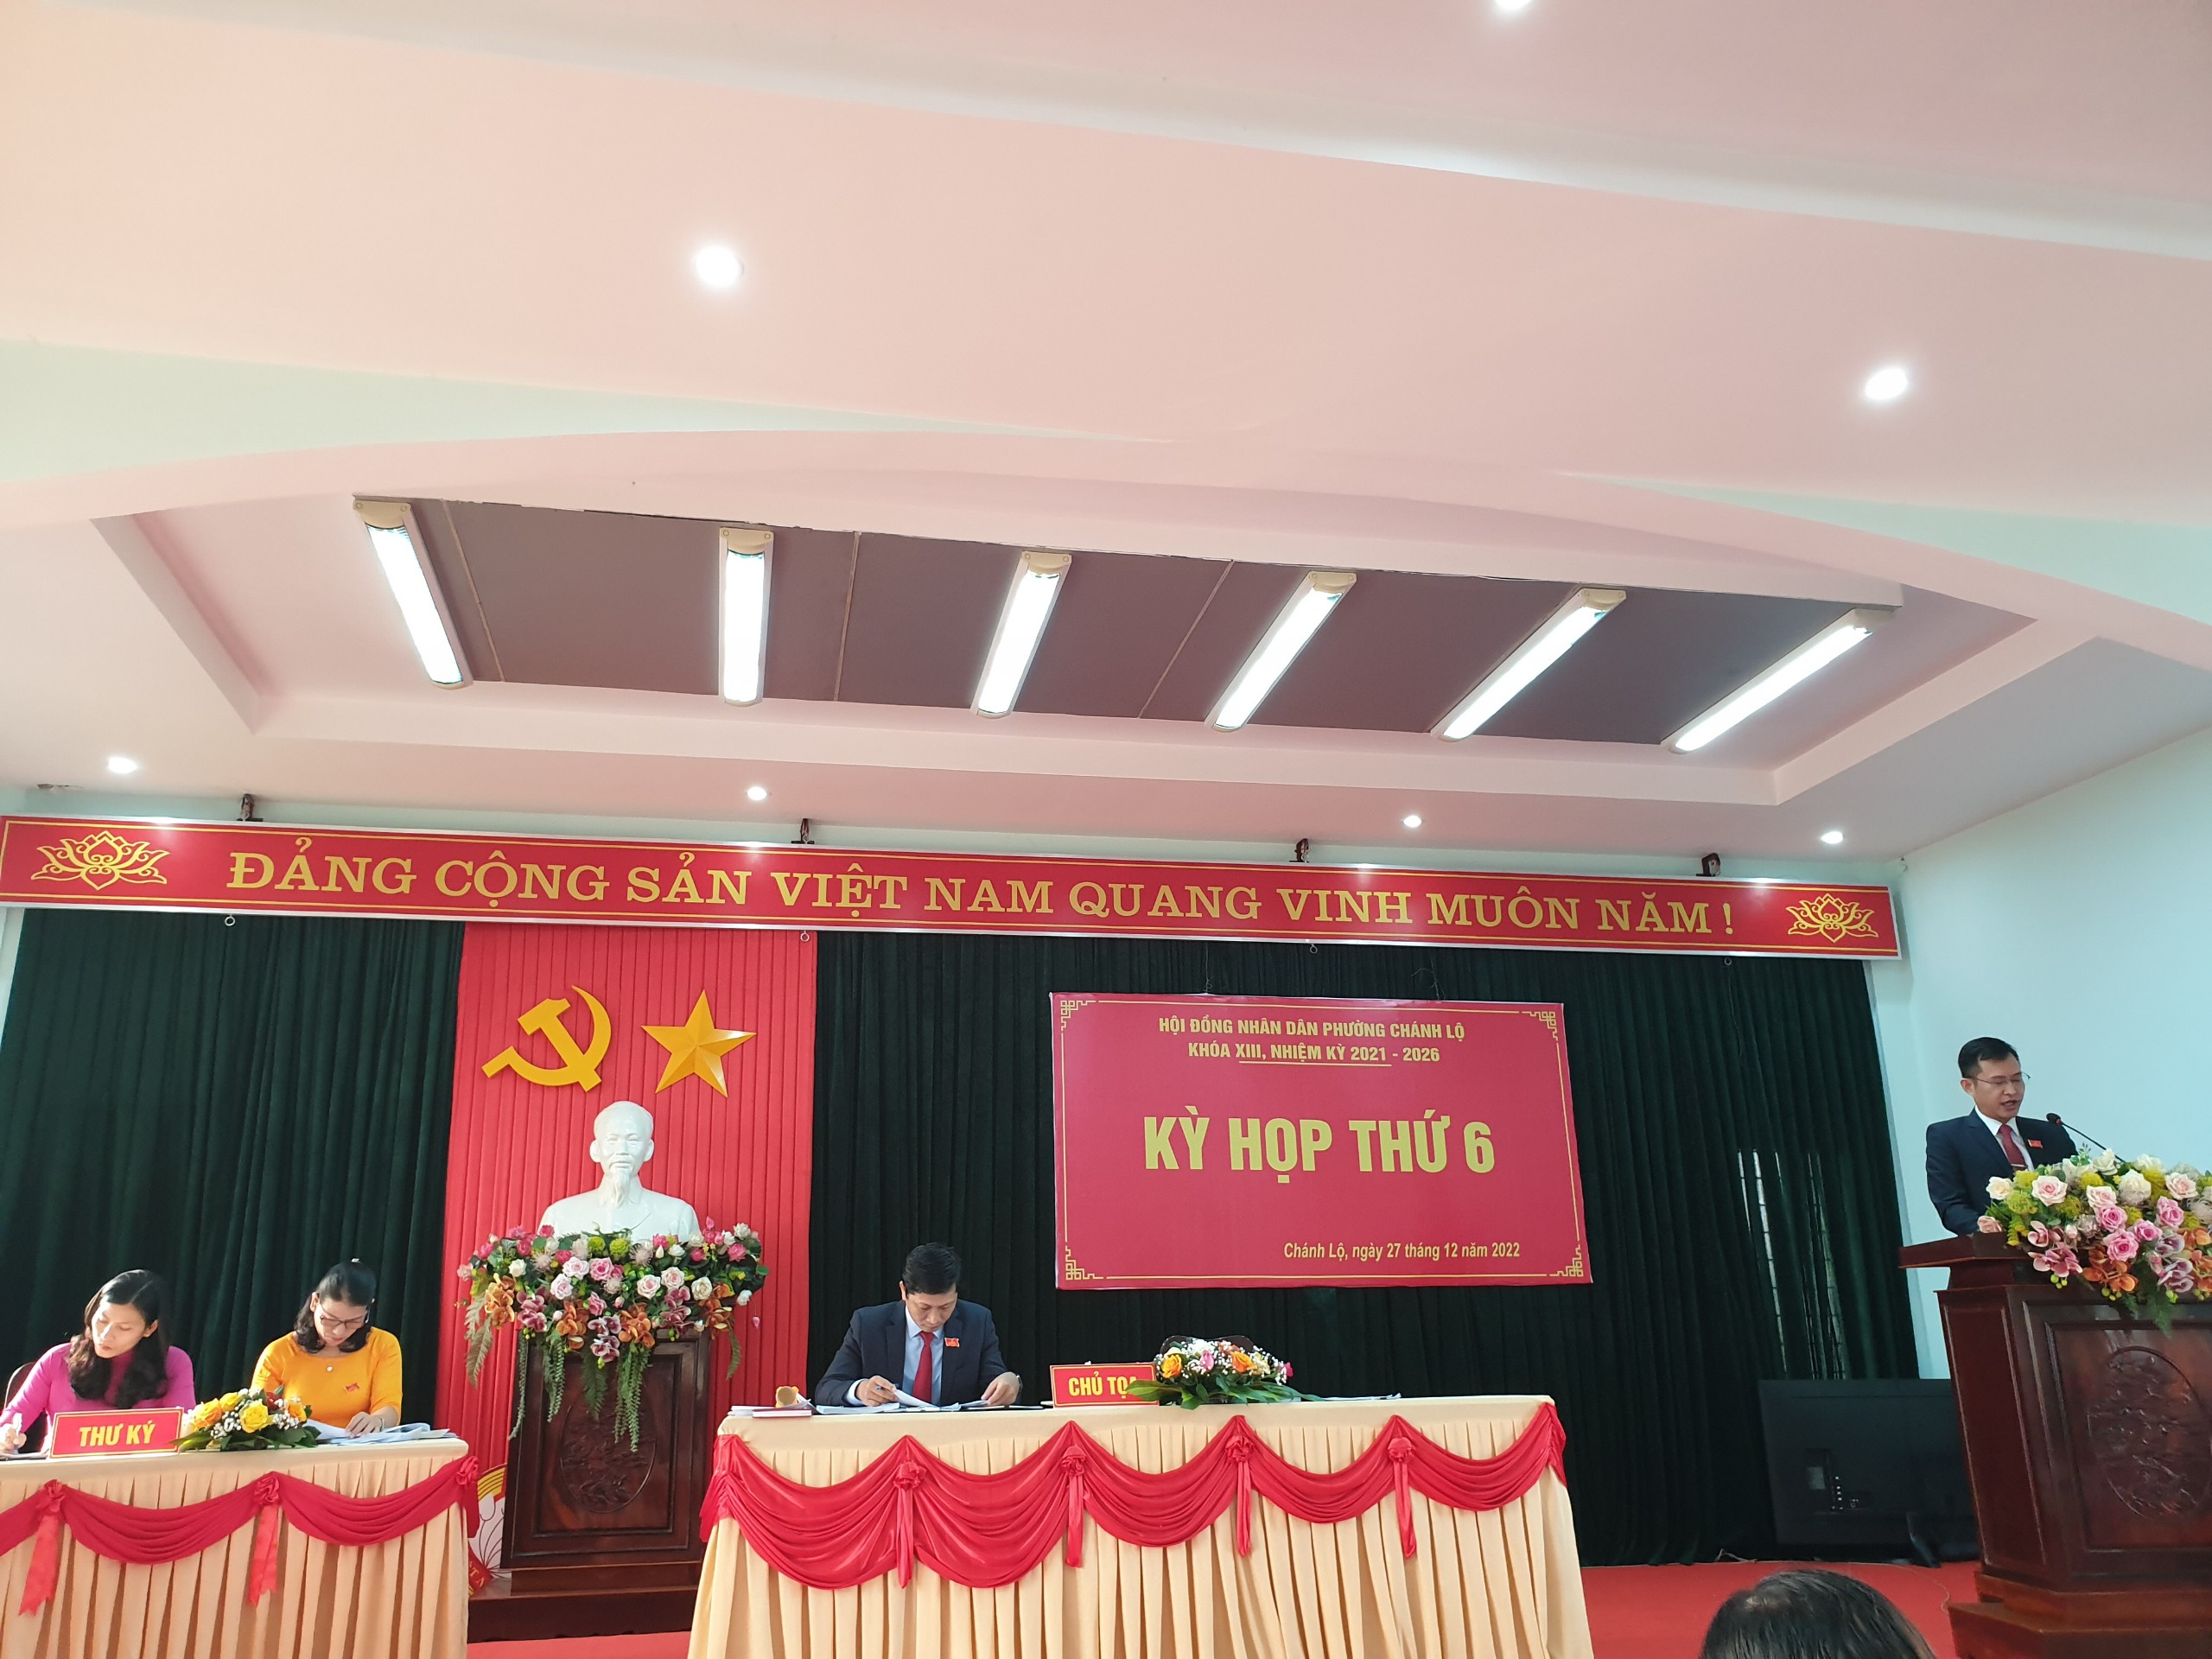 HĐND phường Chánh Lộ hoàn thành chương trình kỳ họp thứ 6